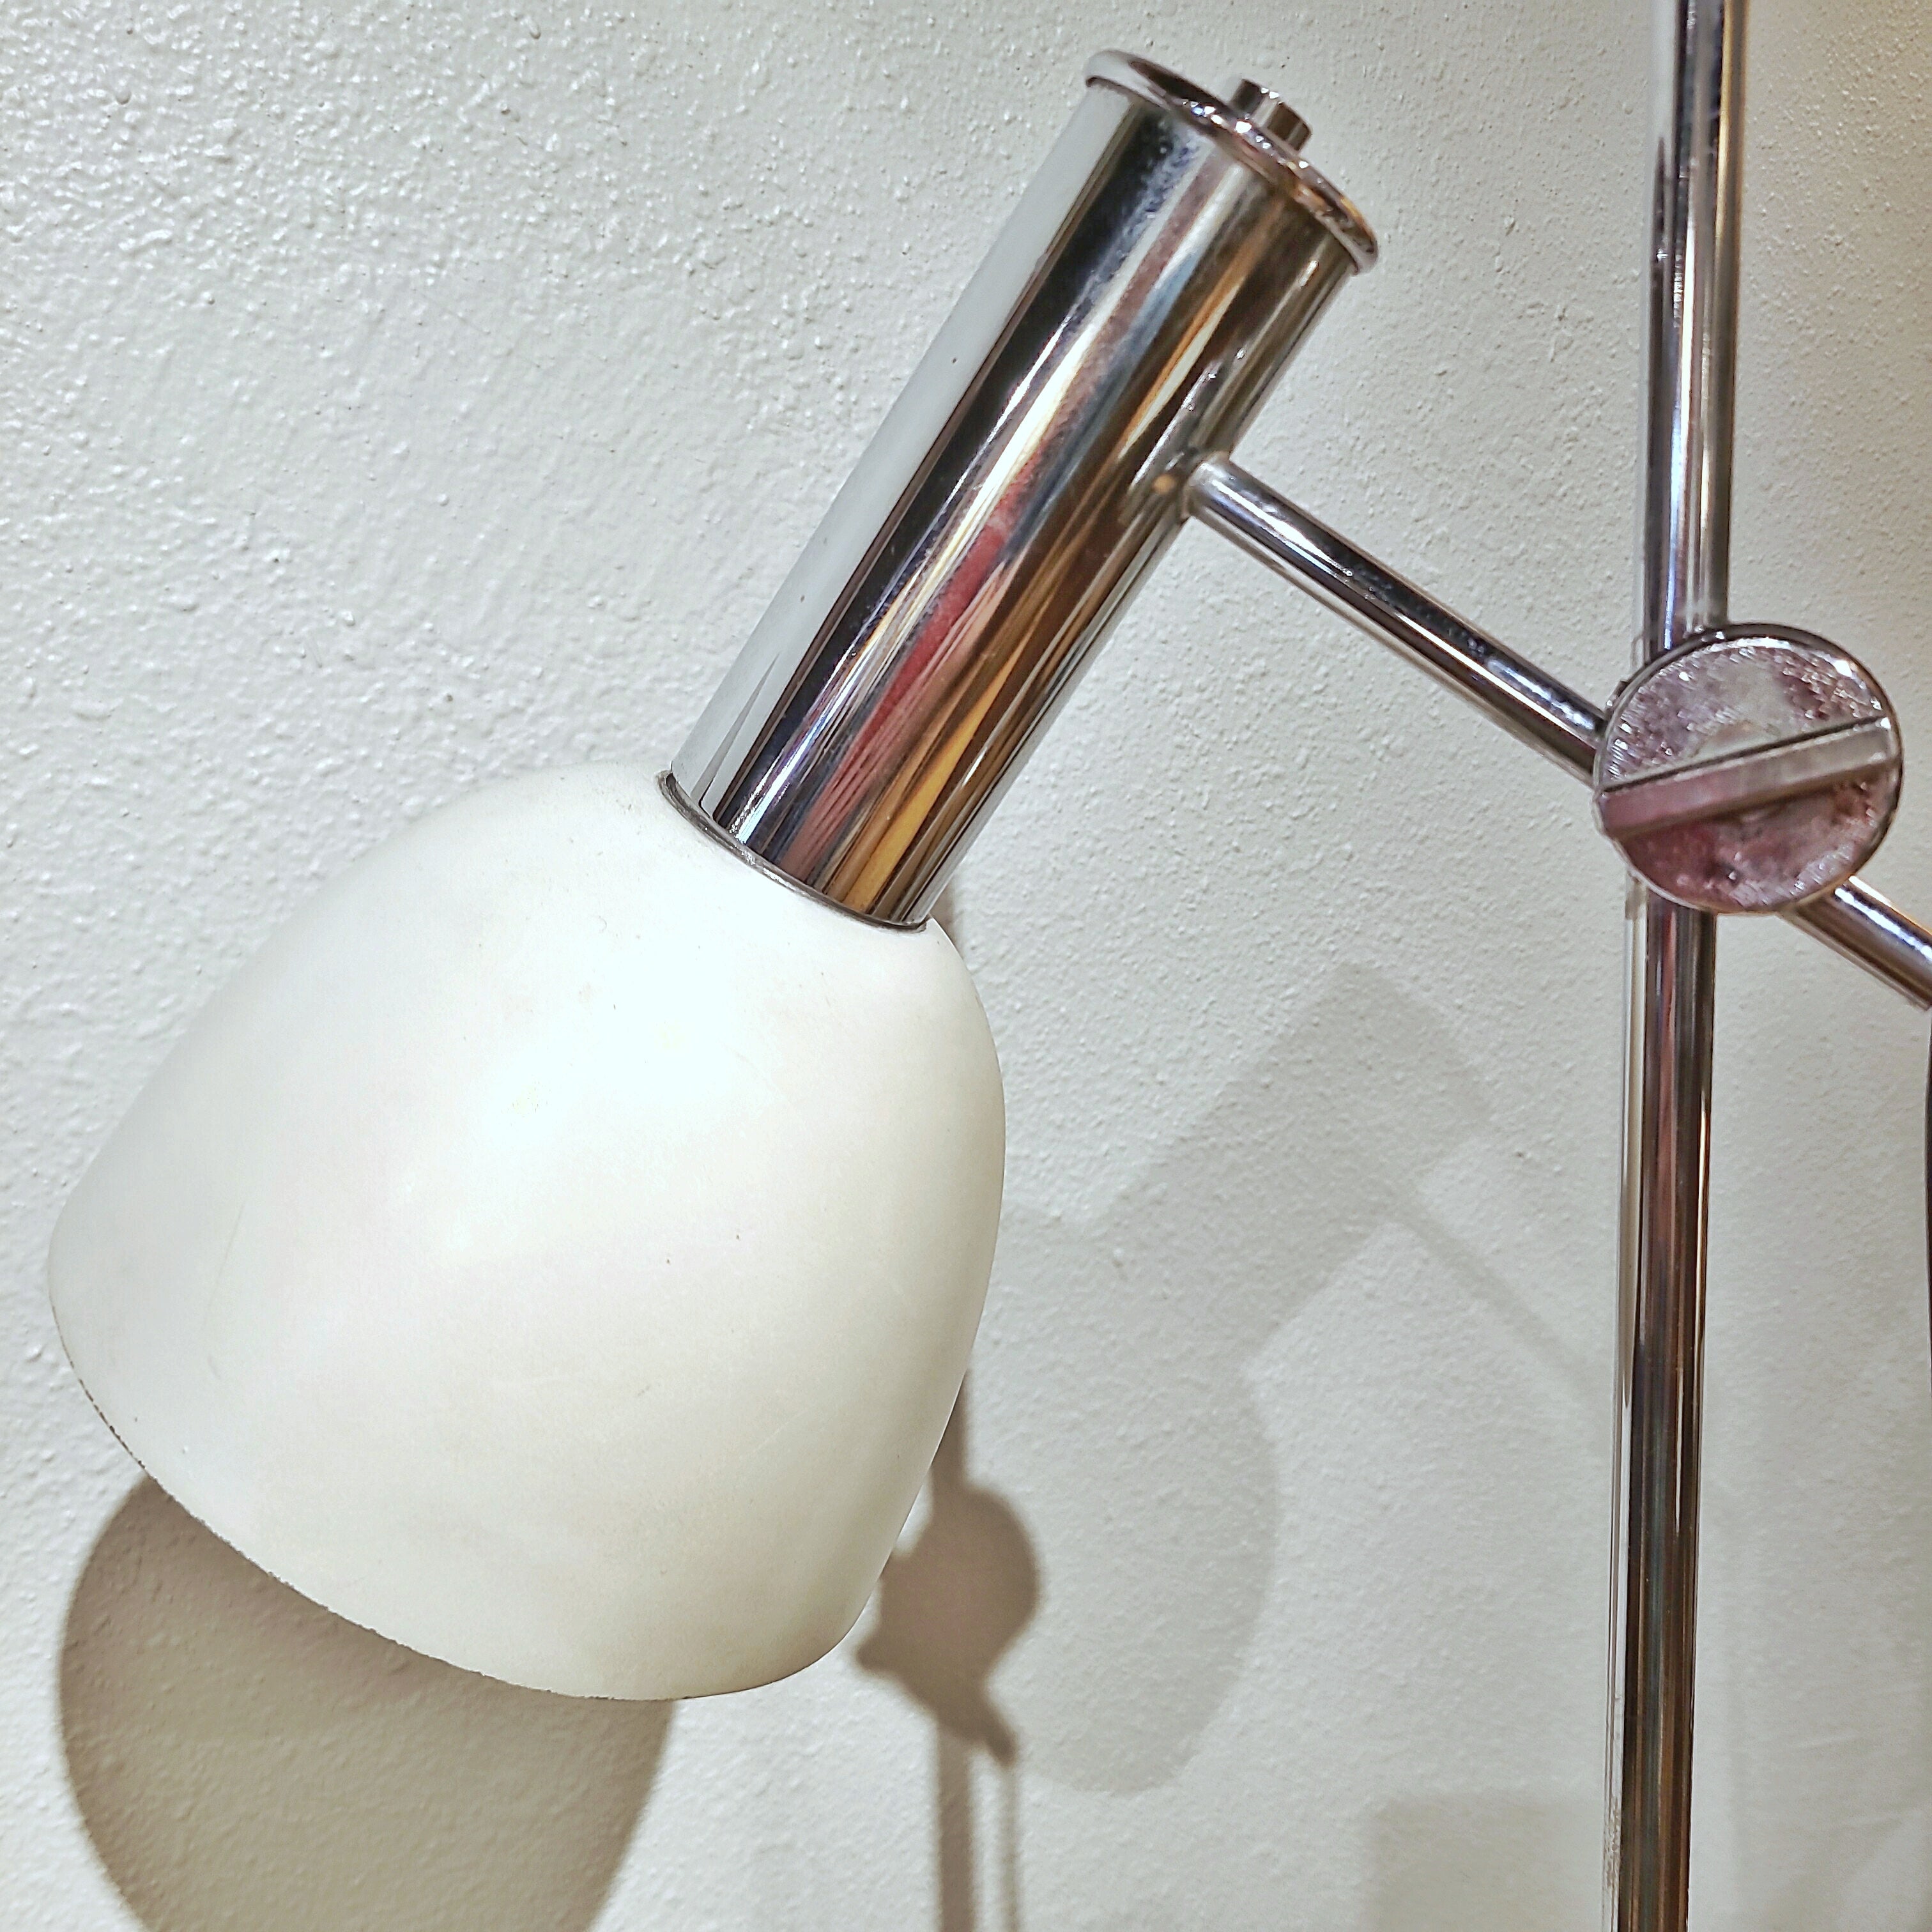 ’70s ITALIAN CHROME DOUBLE-HEADED FLOOR LAMP WITH MARBLE BASE